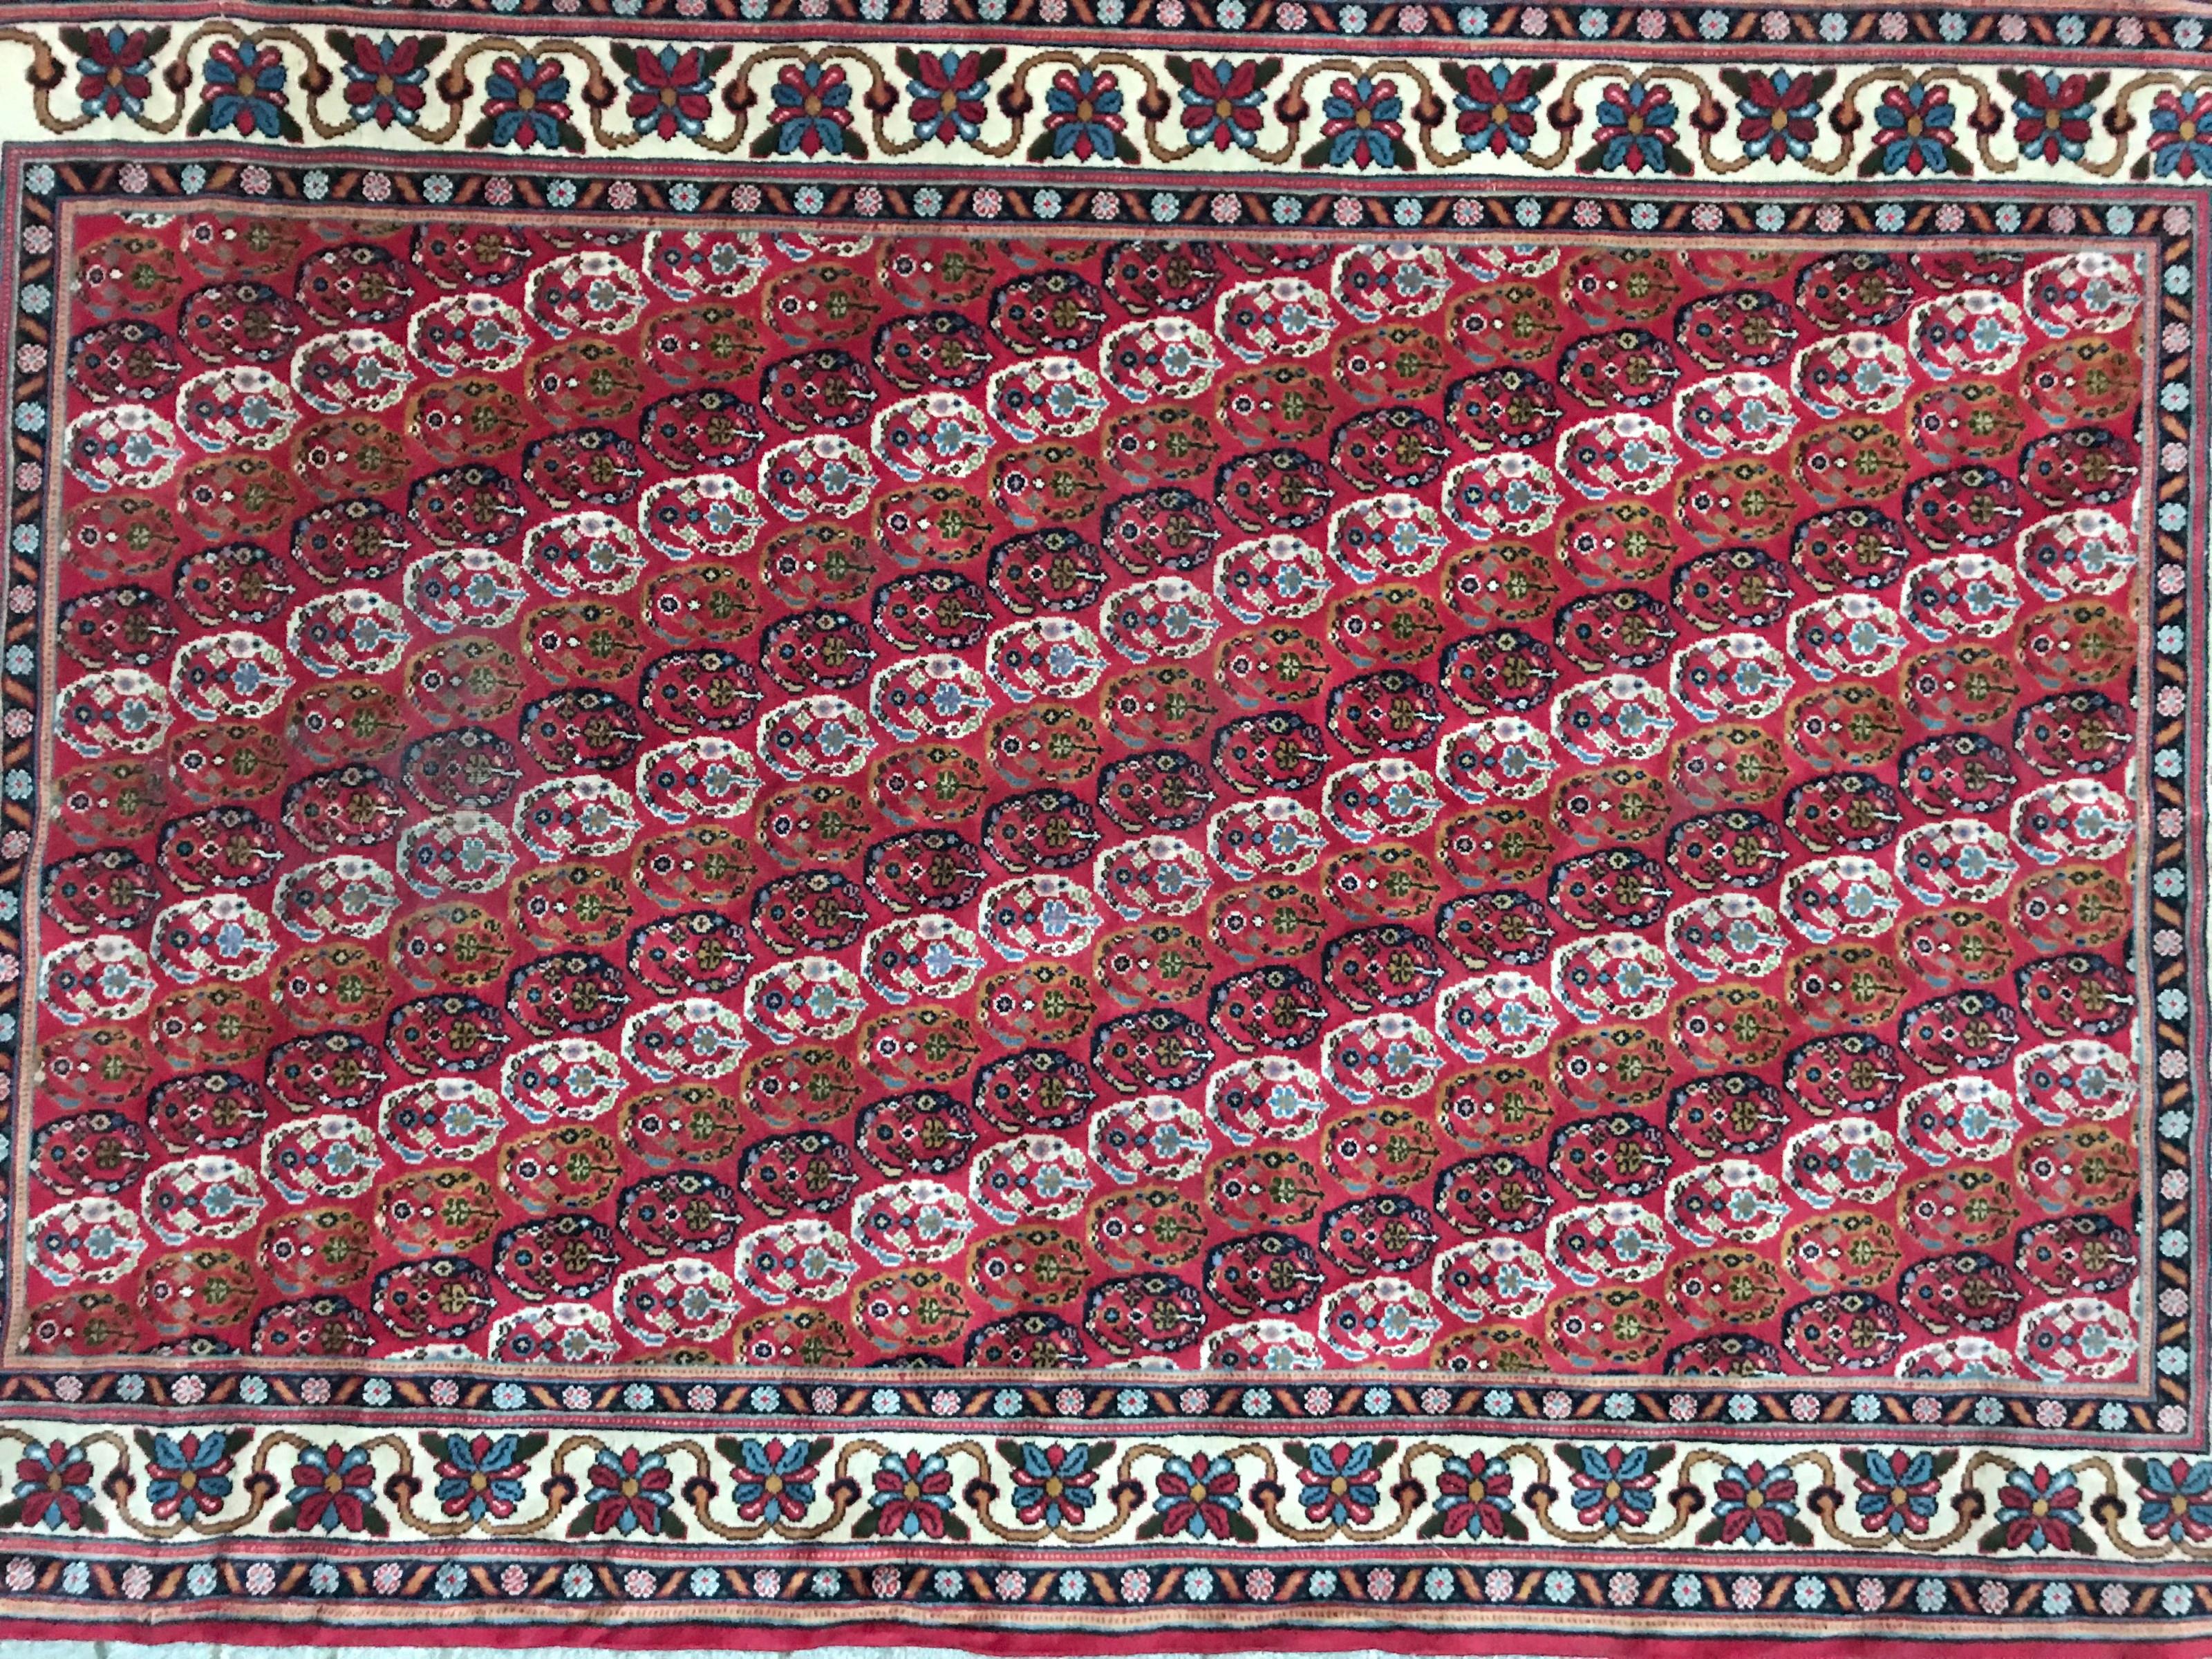 Schöner persischer Designteppich aus Siebenbürgen aus dem 20. Jahrhundert, mit dekorativem Botteh-Muster und schönen Farben in Rosa, Blau, Grün und Gelb, komplett handgeknüpft mit Wollsamt auf Baumwollgrund.